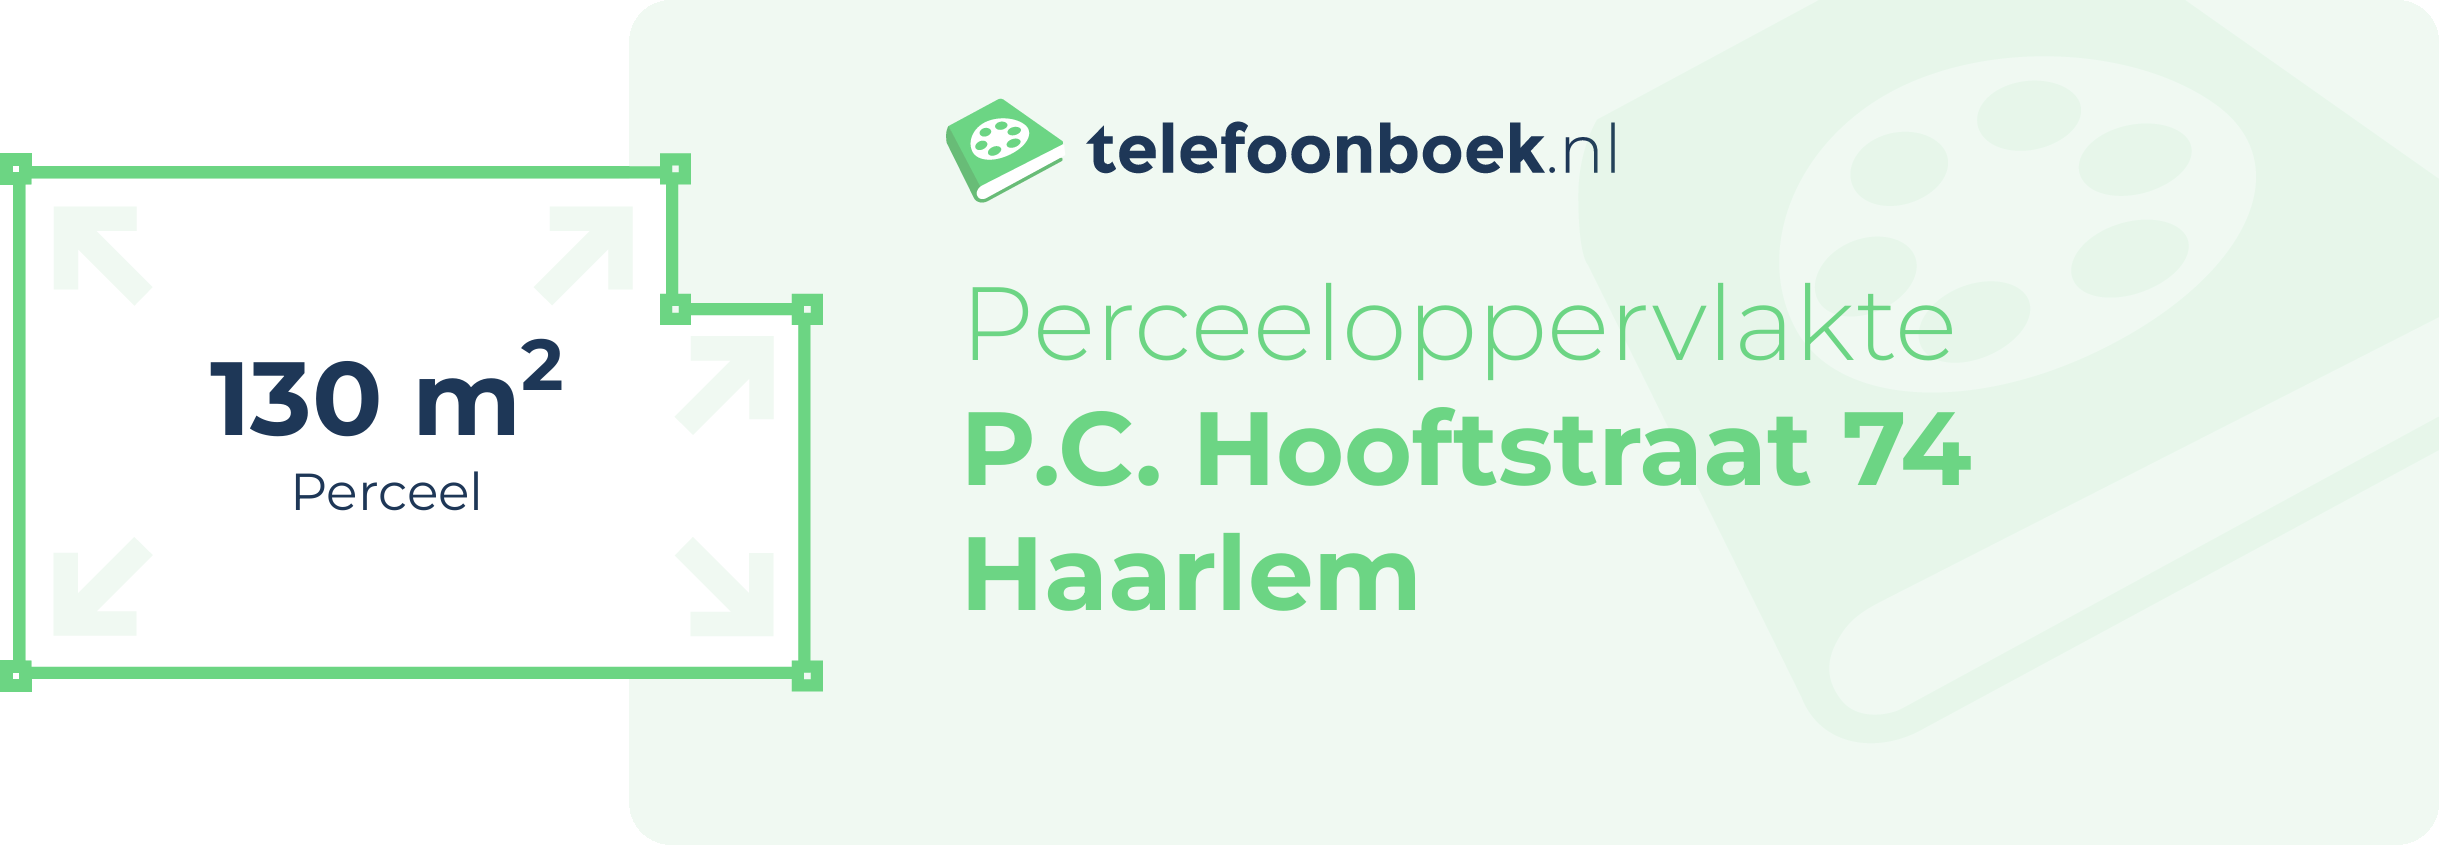 Perceeloppervlakte P.C. Hooftstraat 74 Haarlem